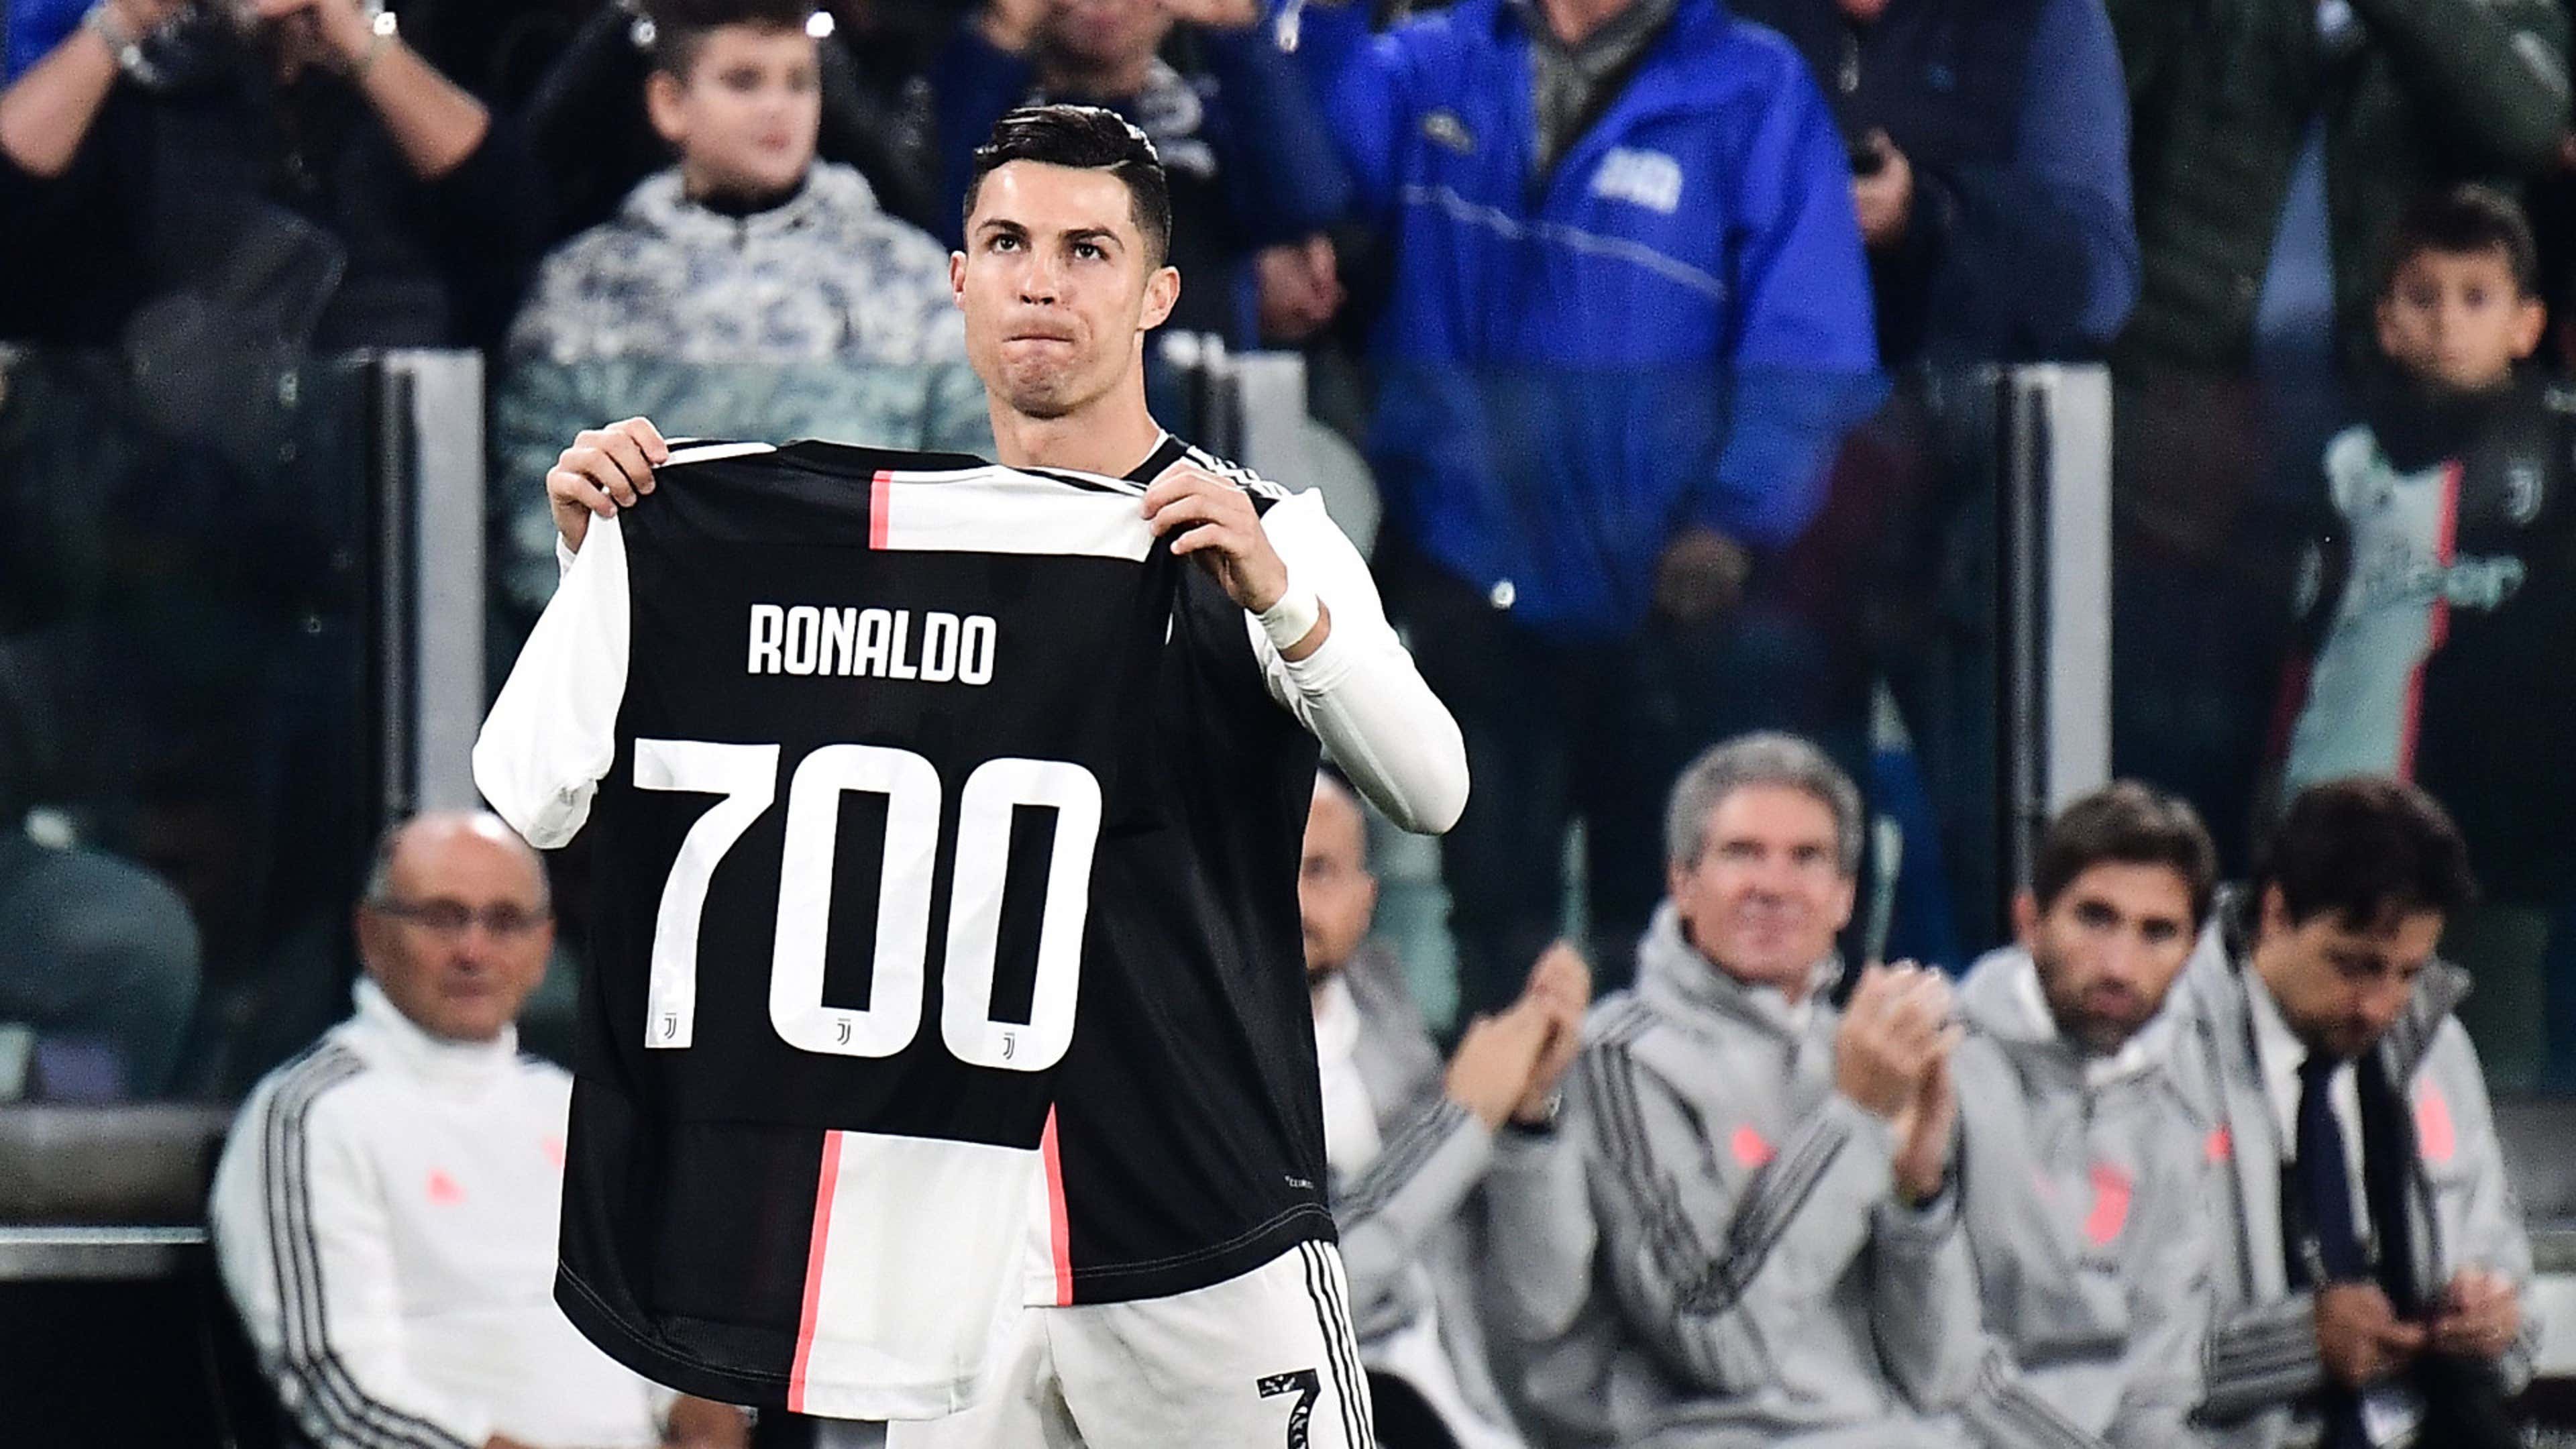 La Juventus tributa Ronaldo: maglia col '700' per celebrare il